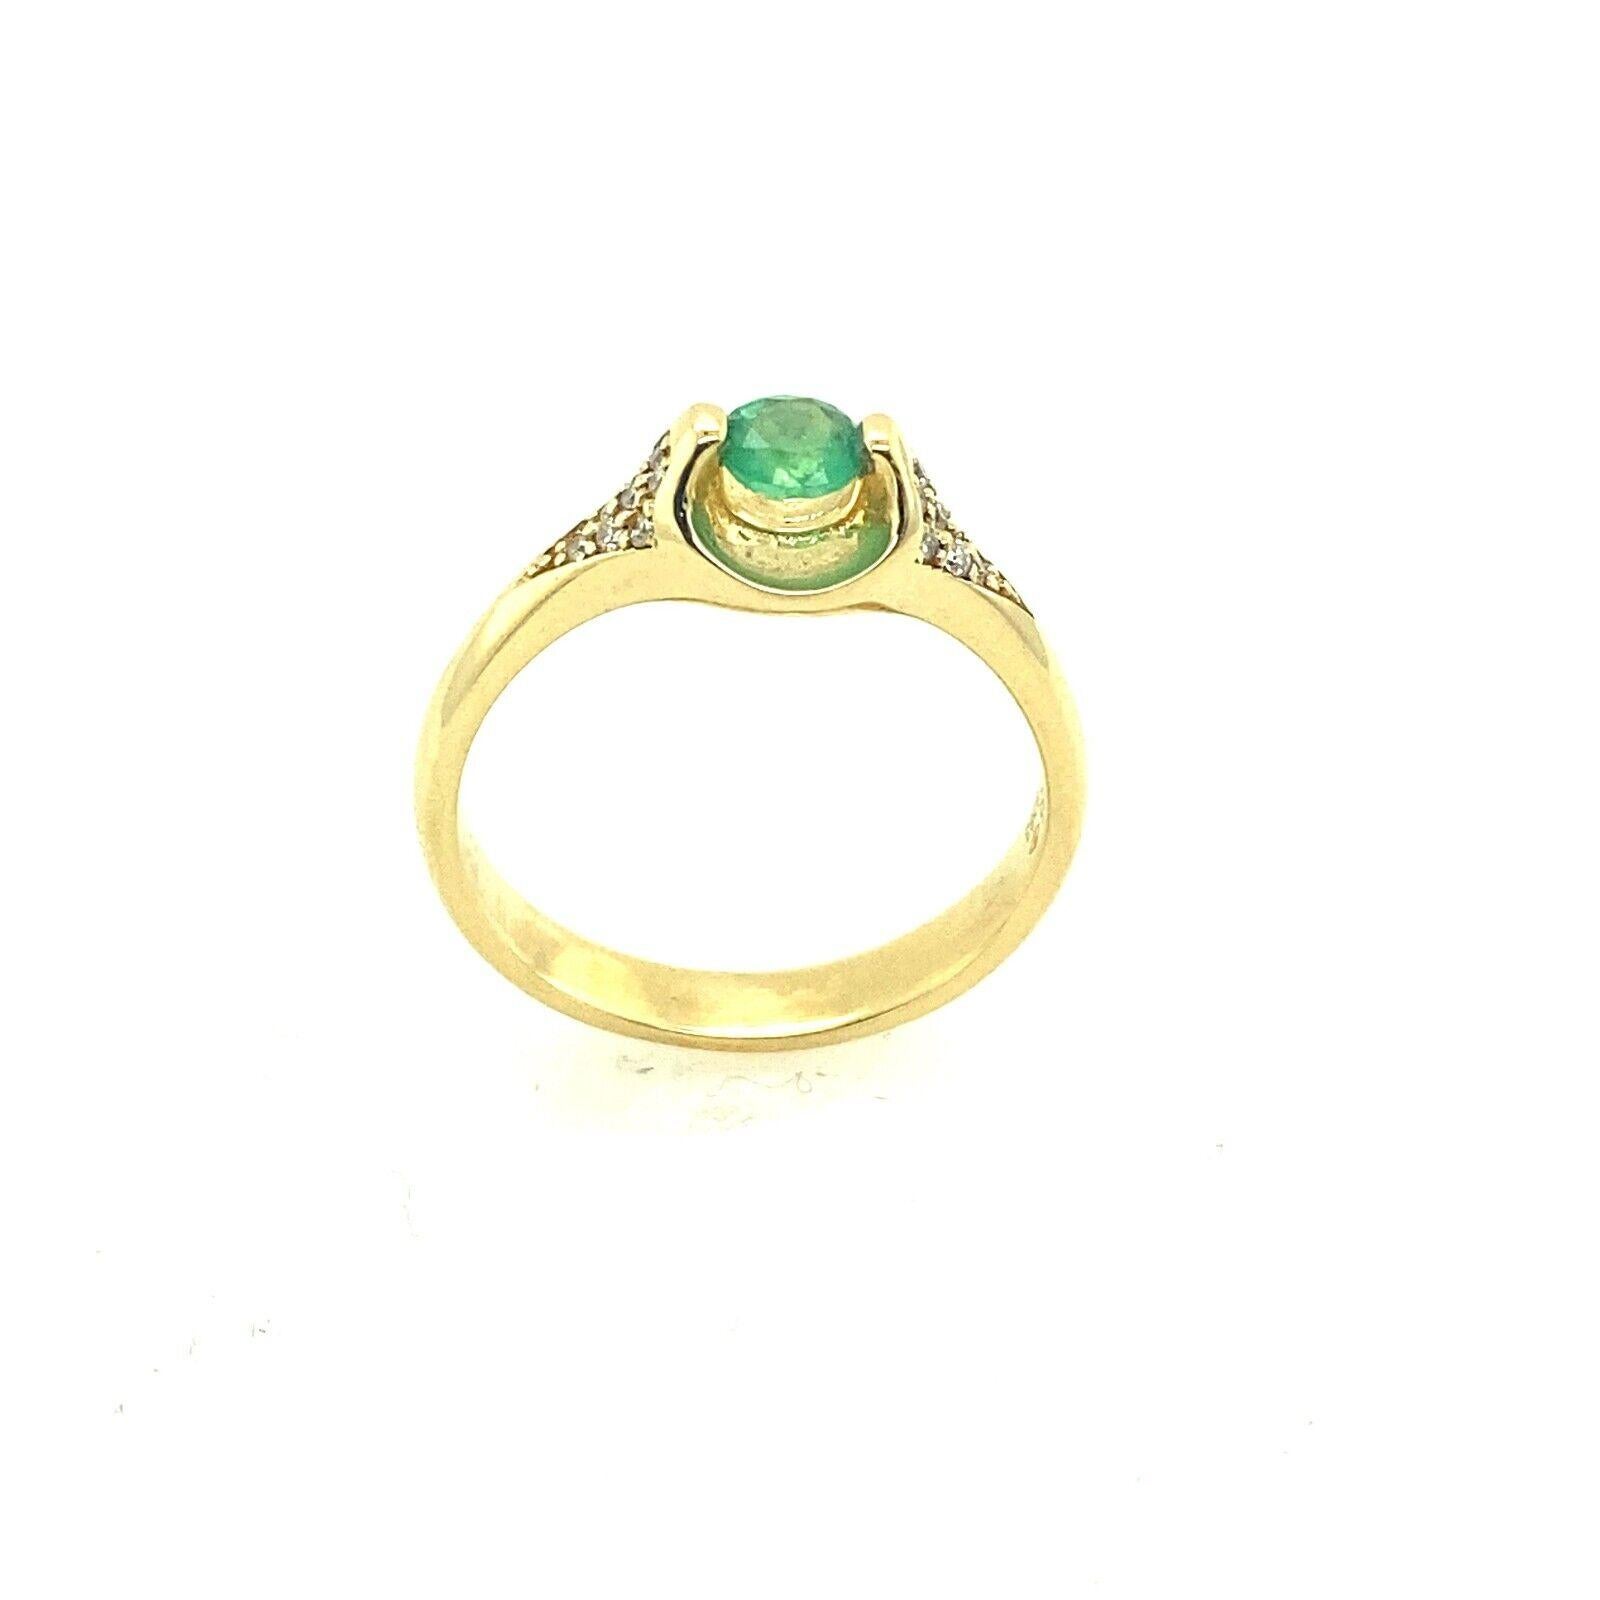 Ring aus 14 Karat Gelbgold mit Smaragd und Diamanten, mit 8 Diamanten auf jeder Seite besetzt
Dieser wunderschöne Smaragdring ist aus 14-karätigem Gold gefertigt und mit einem runden Diamanten im Brillantschliff von 0,08 Karat besetzt. Dieser Ring